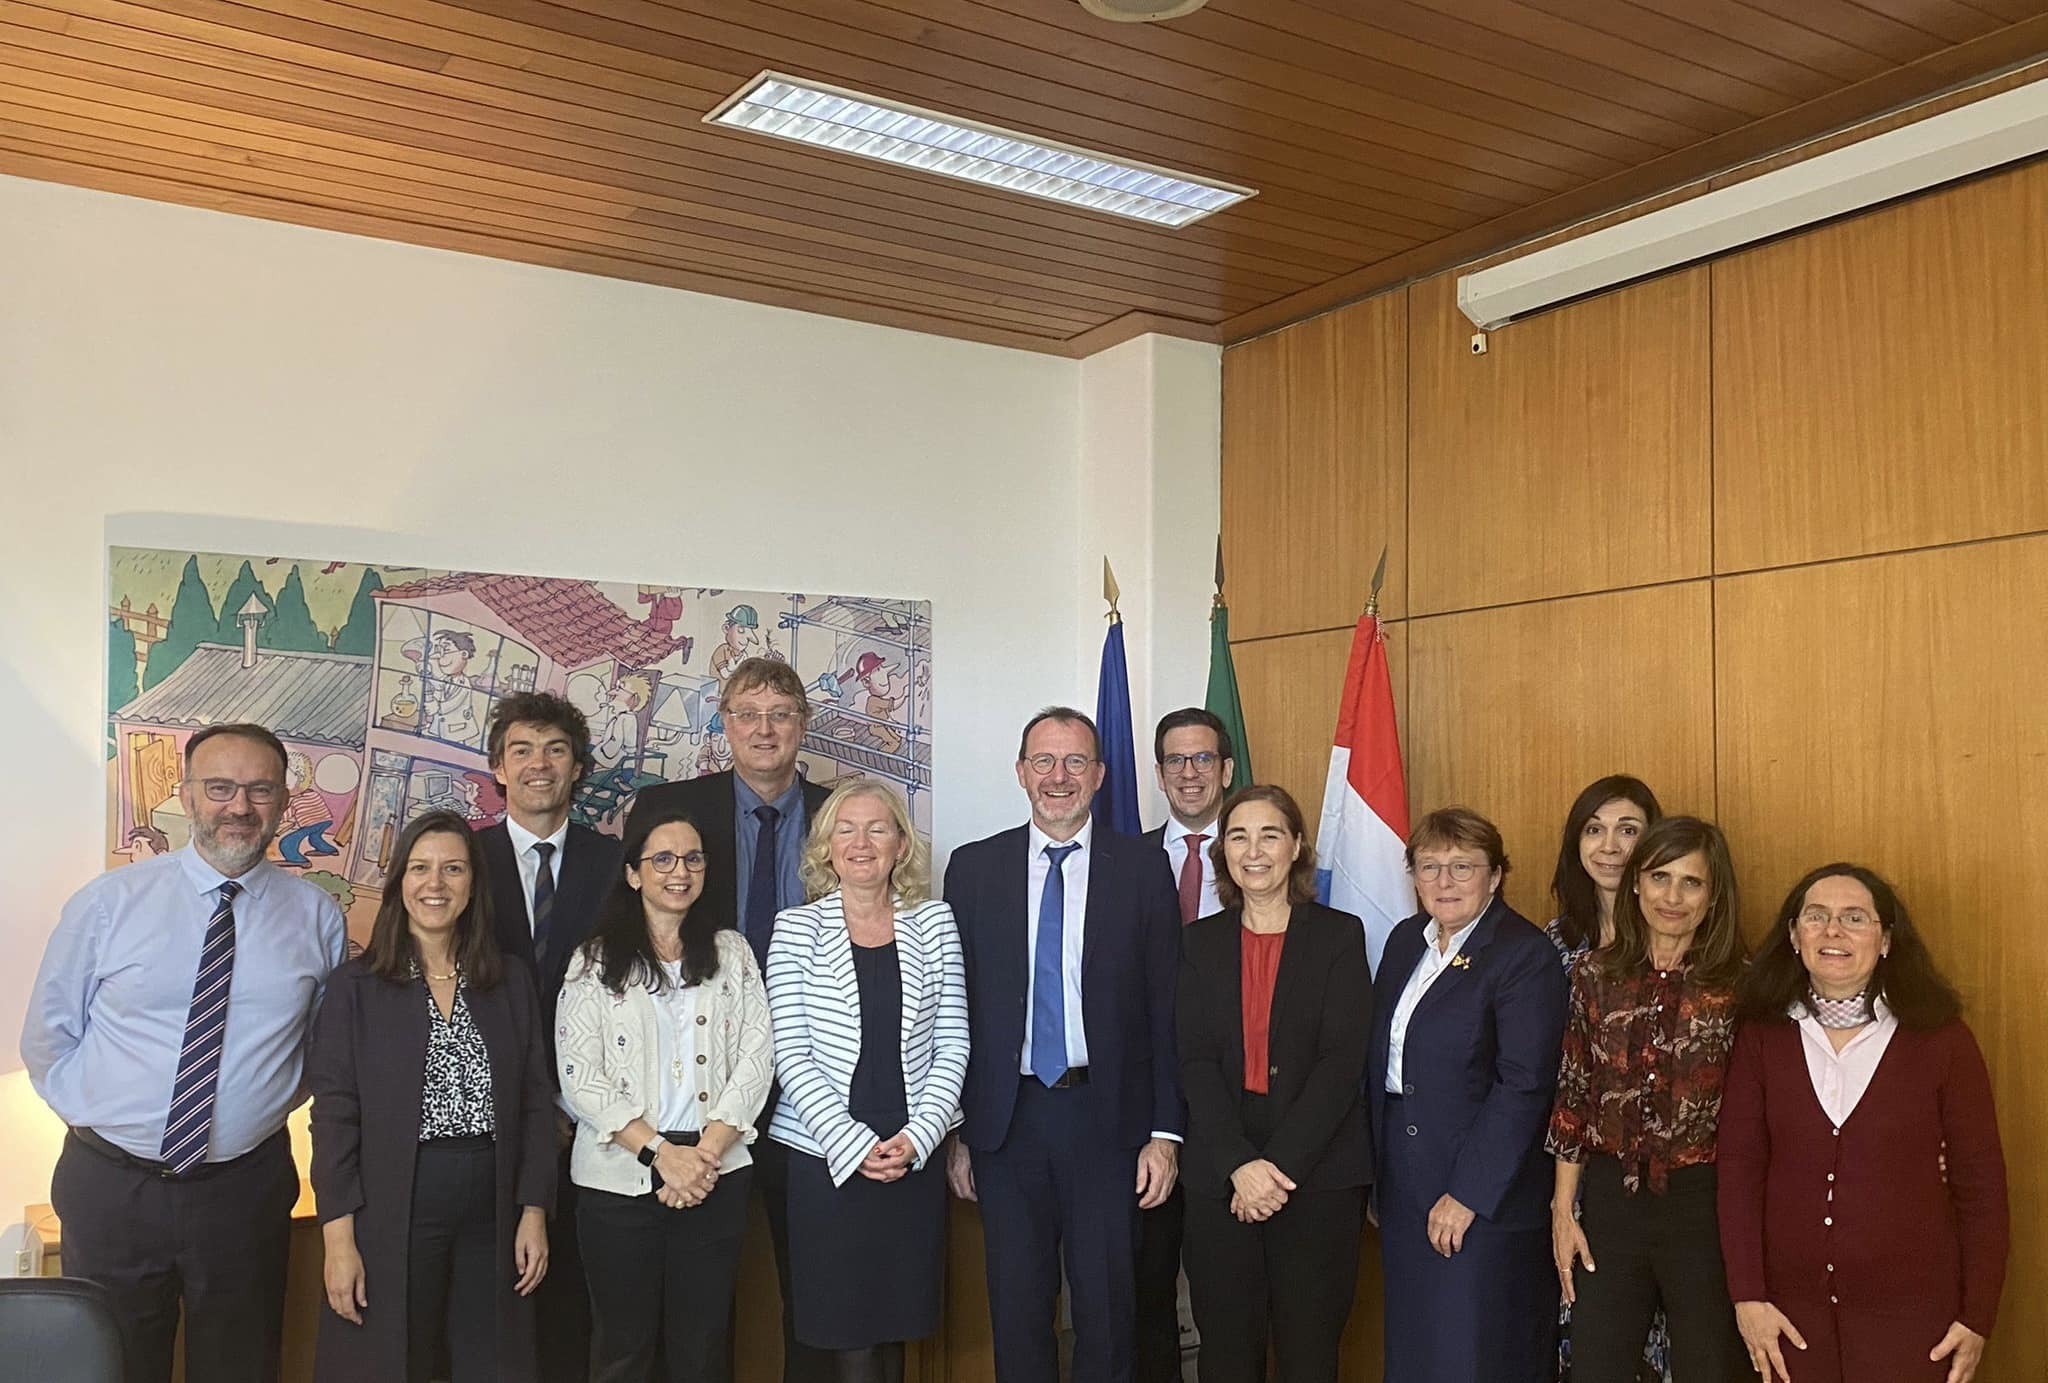 La délégation luxembourgeoise avec les représentants de l'inspection du travail portugaise (ACT)